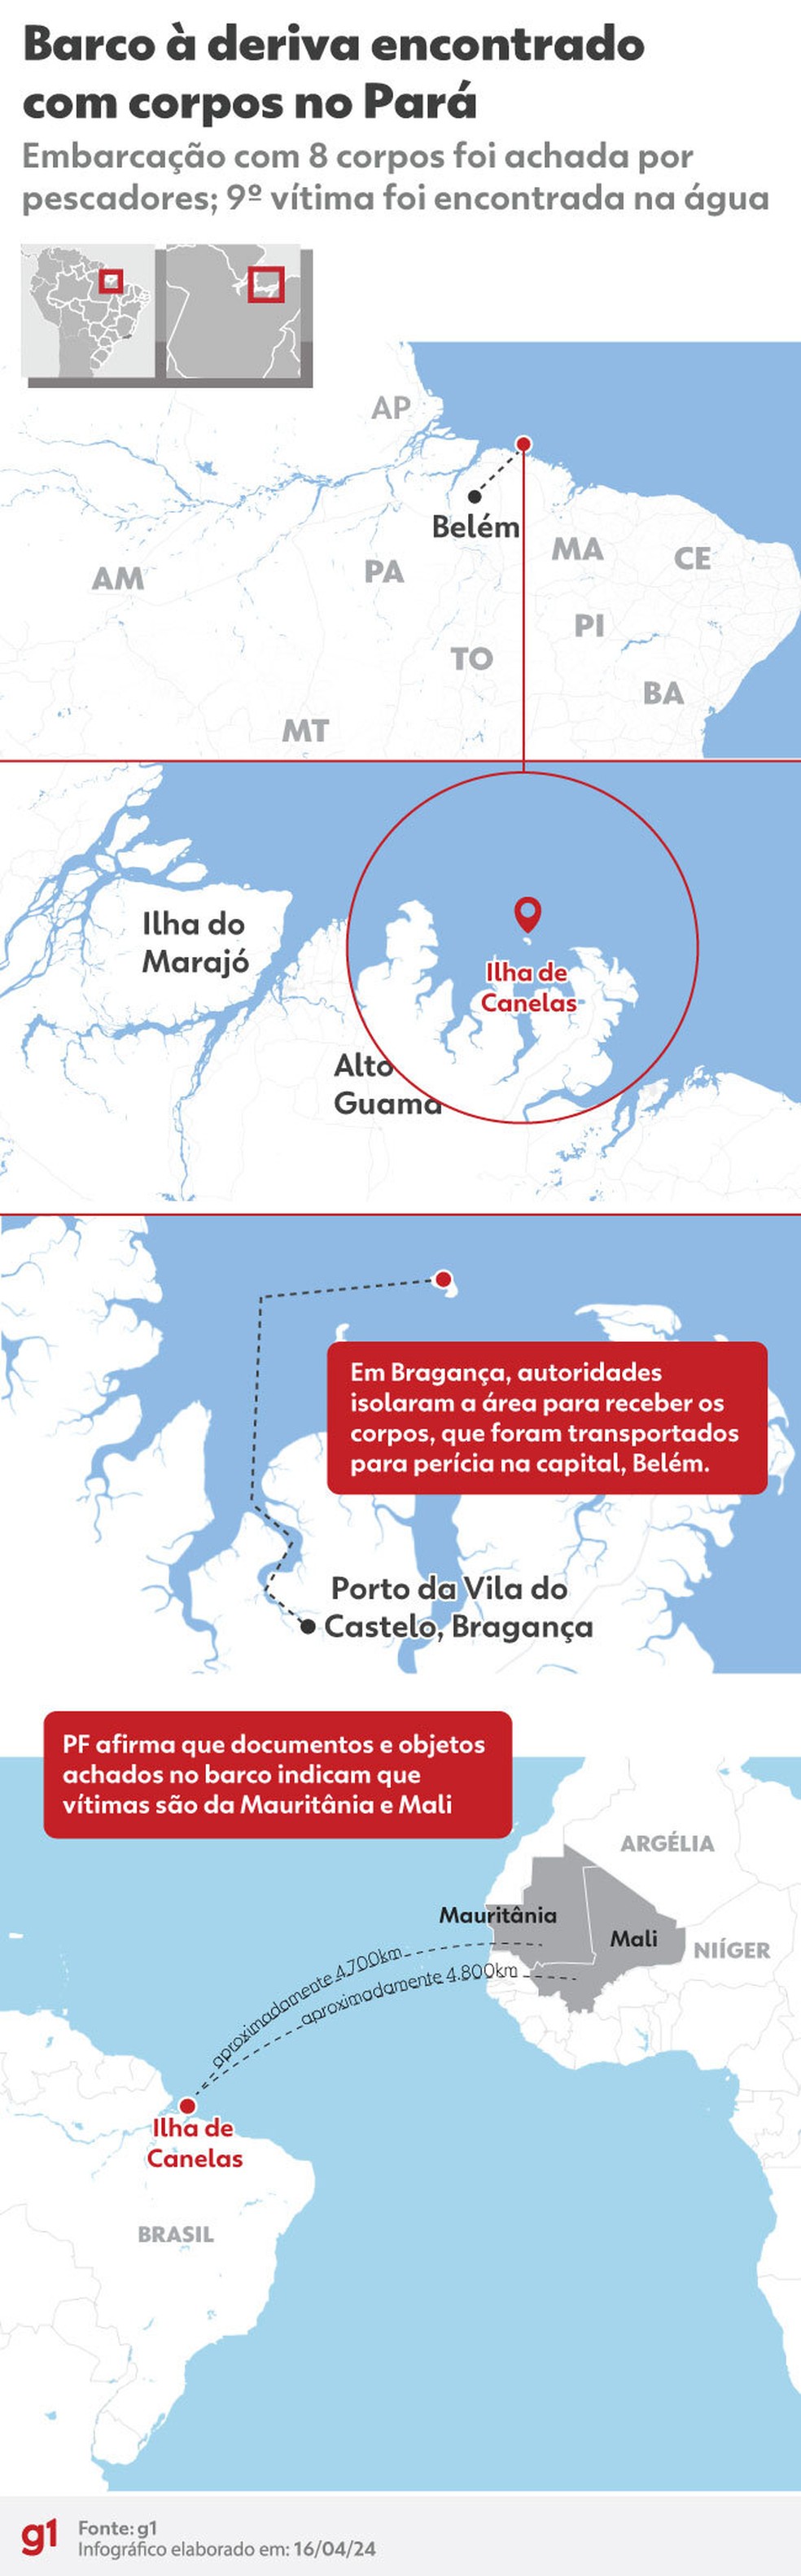 Infográfico: veja onde barco com corpos foi encontrado no Pará — Foto: g1